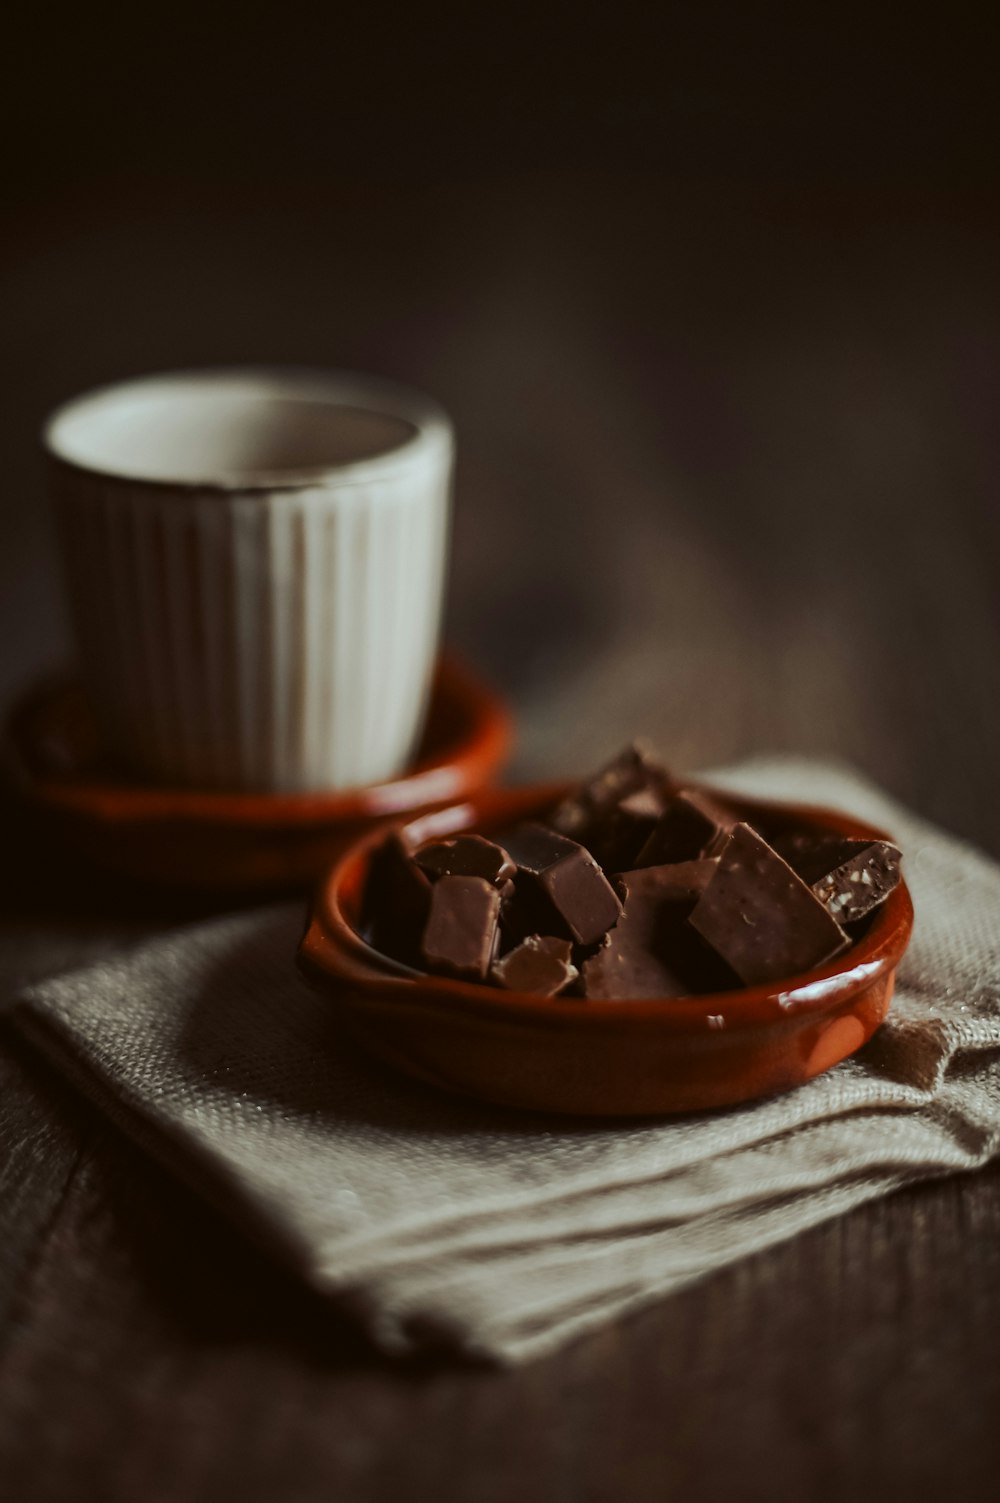 Barras de chocolate en plato redondo de cerámica marrón